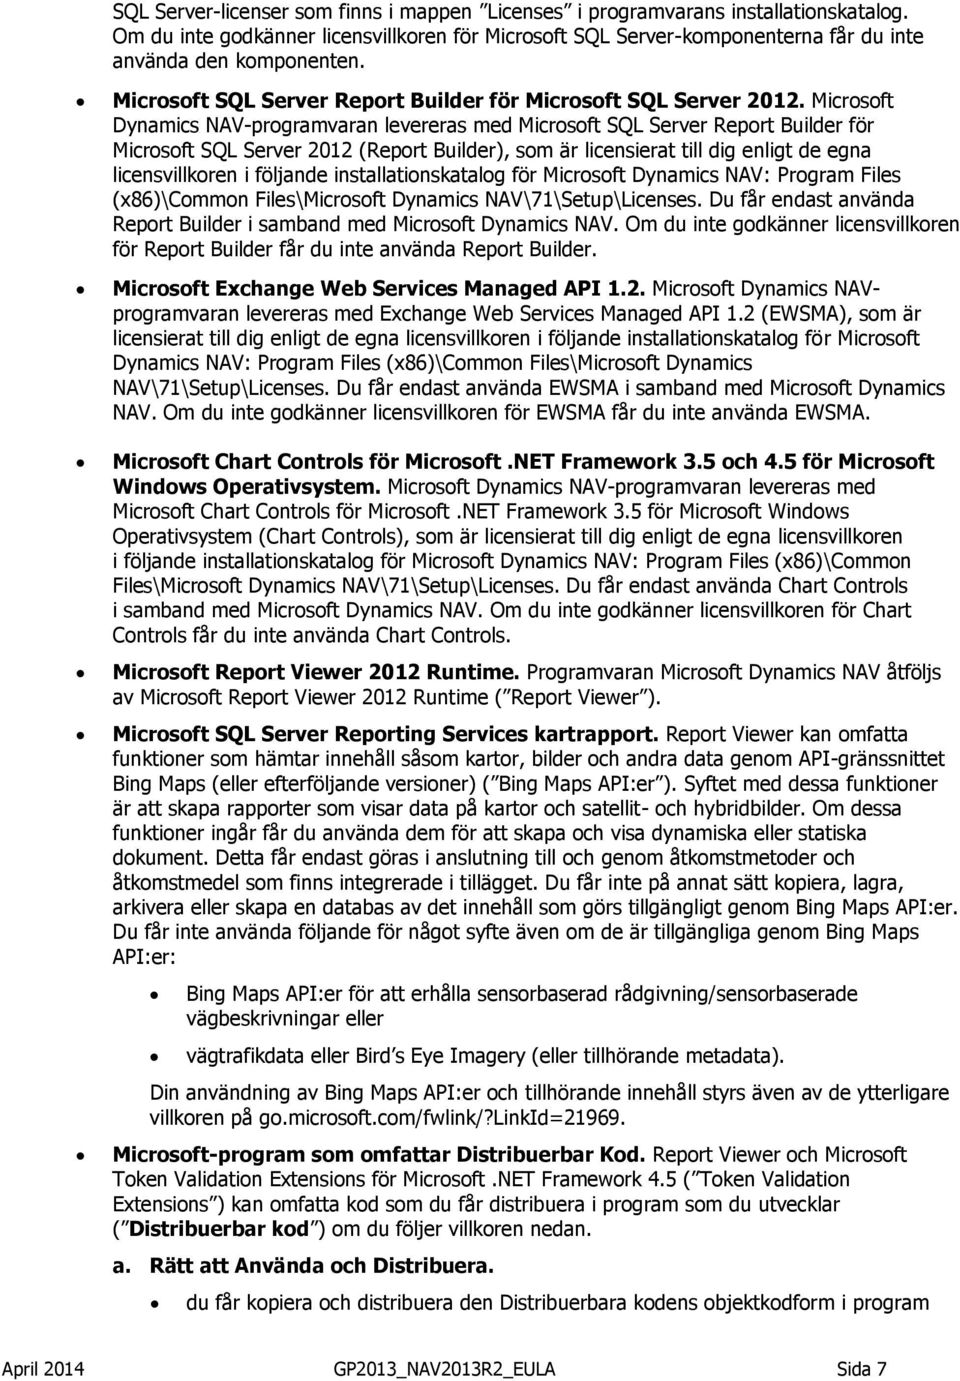 Microsoft Dynamics NAV-programvaran levereras med Microsoft SQL Server Report Builder för Microsoft SQL Server 2012 (Report Builder), som är licensierat till dig enligt de egna licensvillkoren i